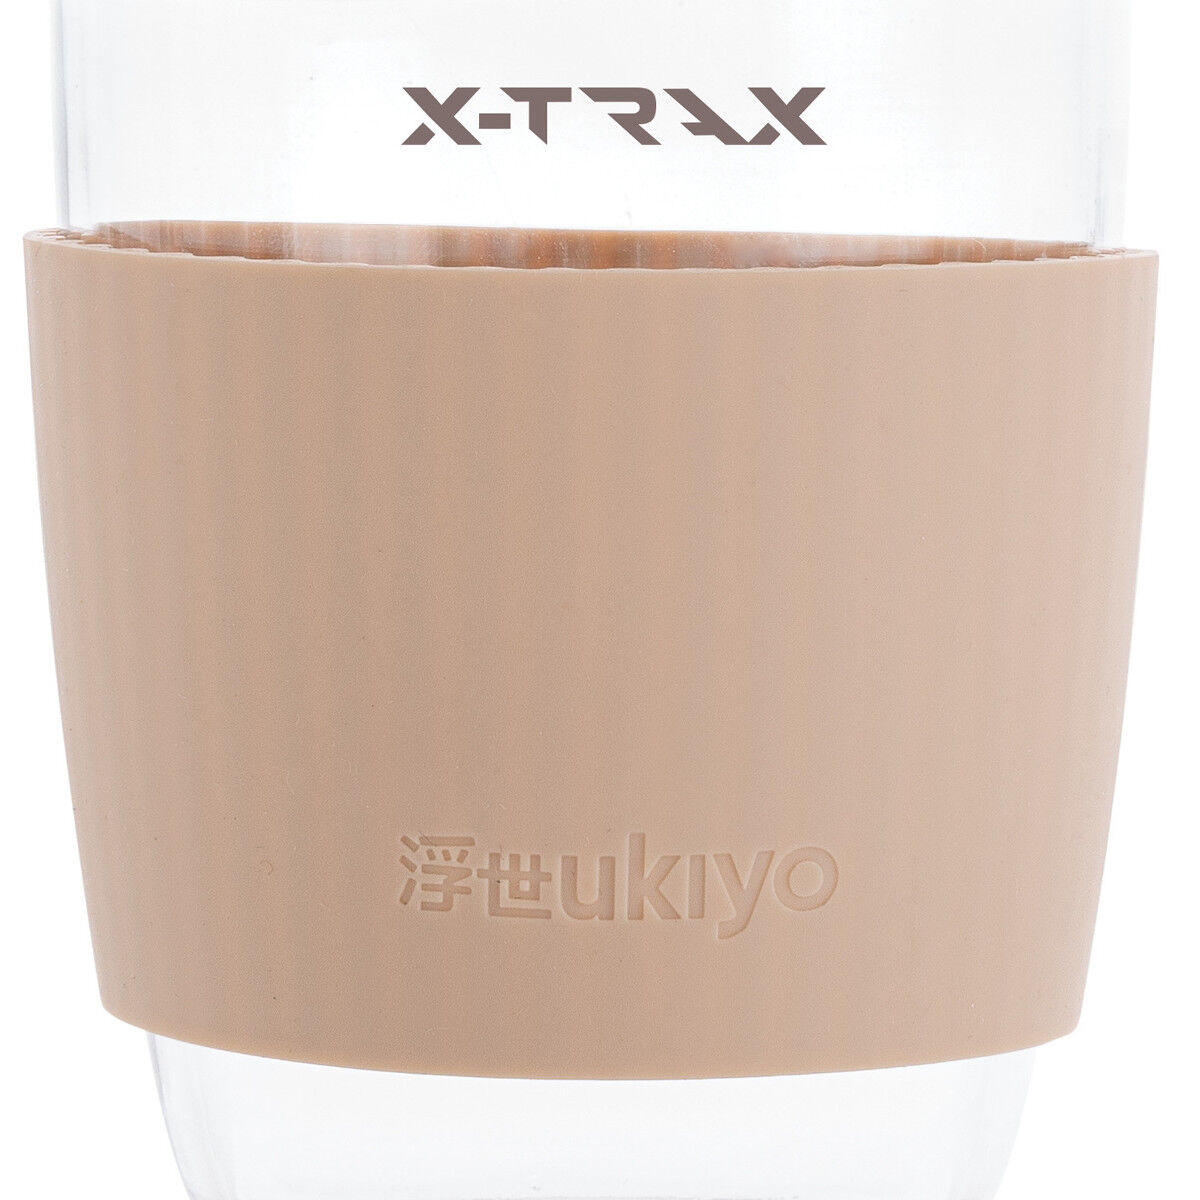 Ukiyo Glass Tumbler with Silicone Sleeve